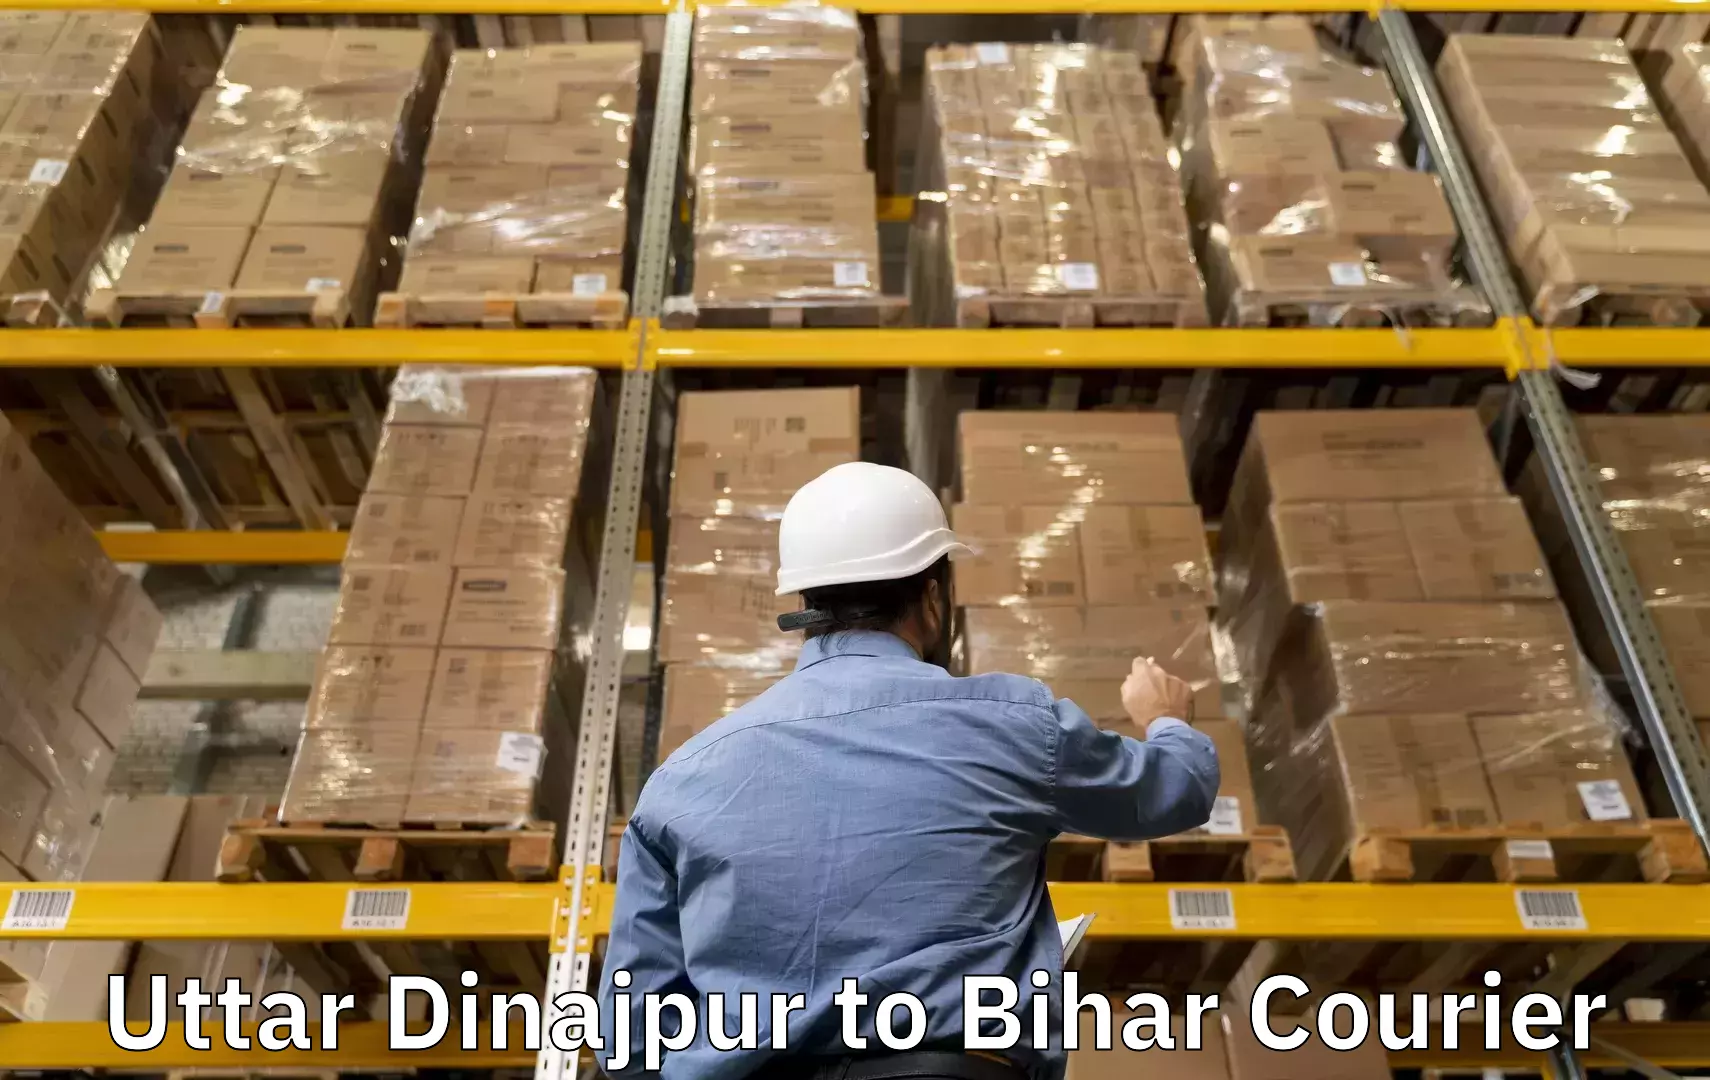 Baggage shipping experience Uttar Dinajpur to Jamui